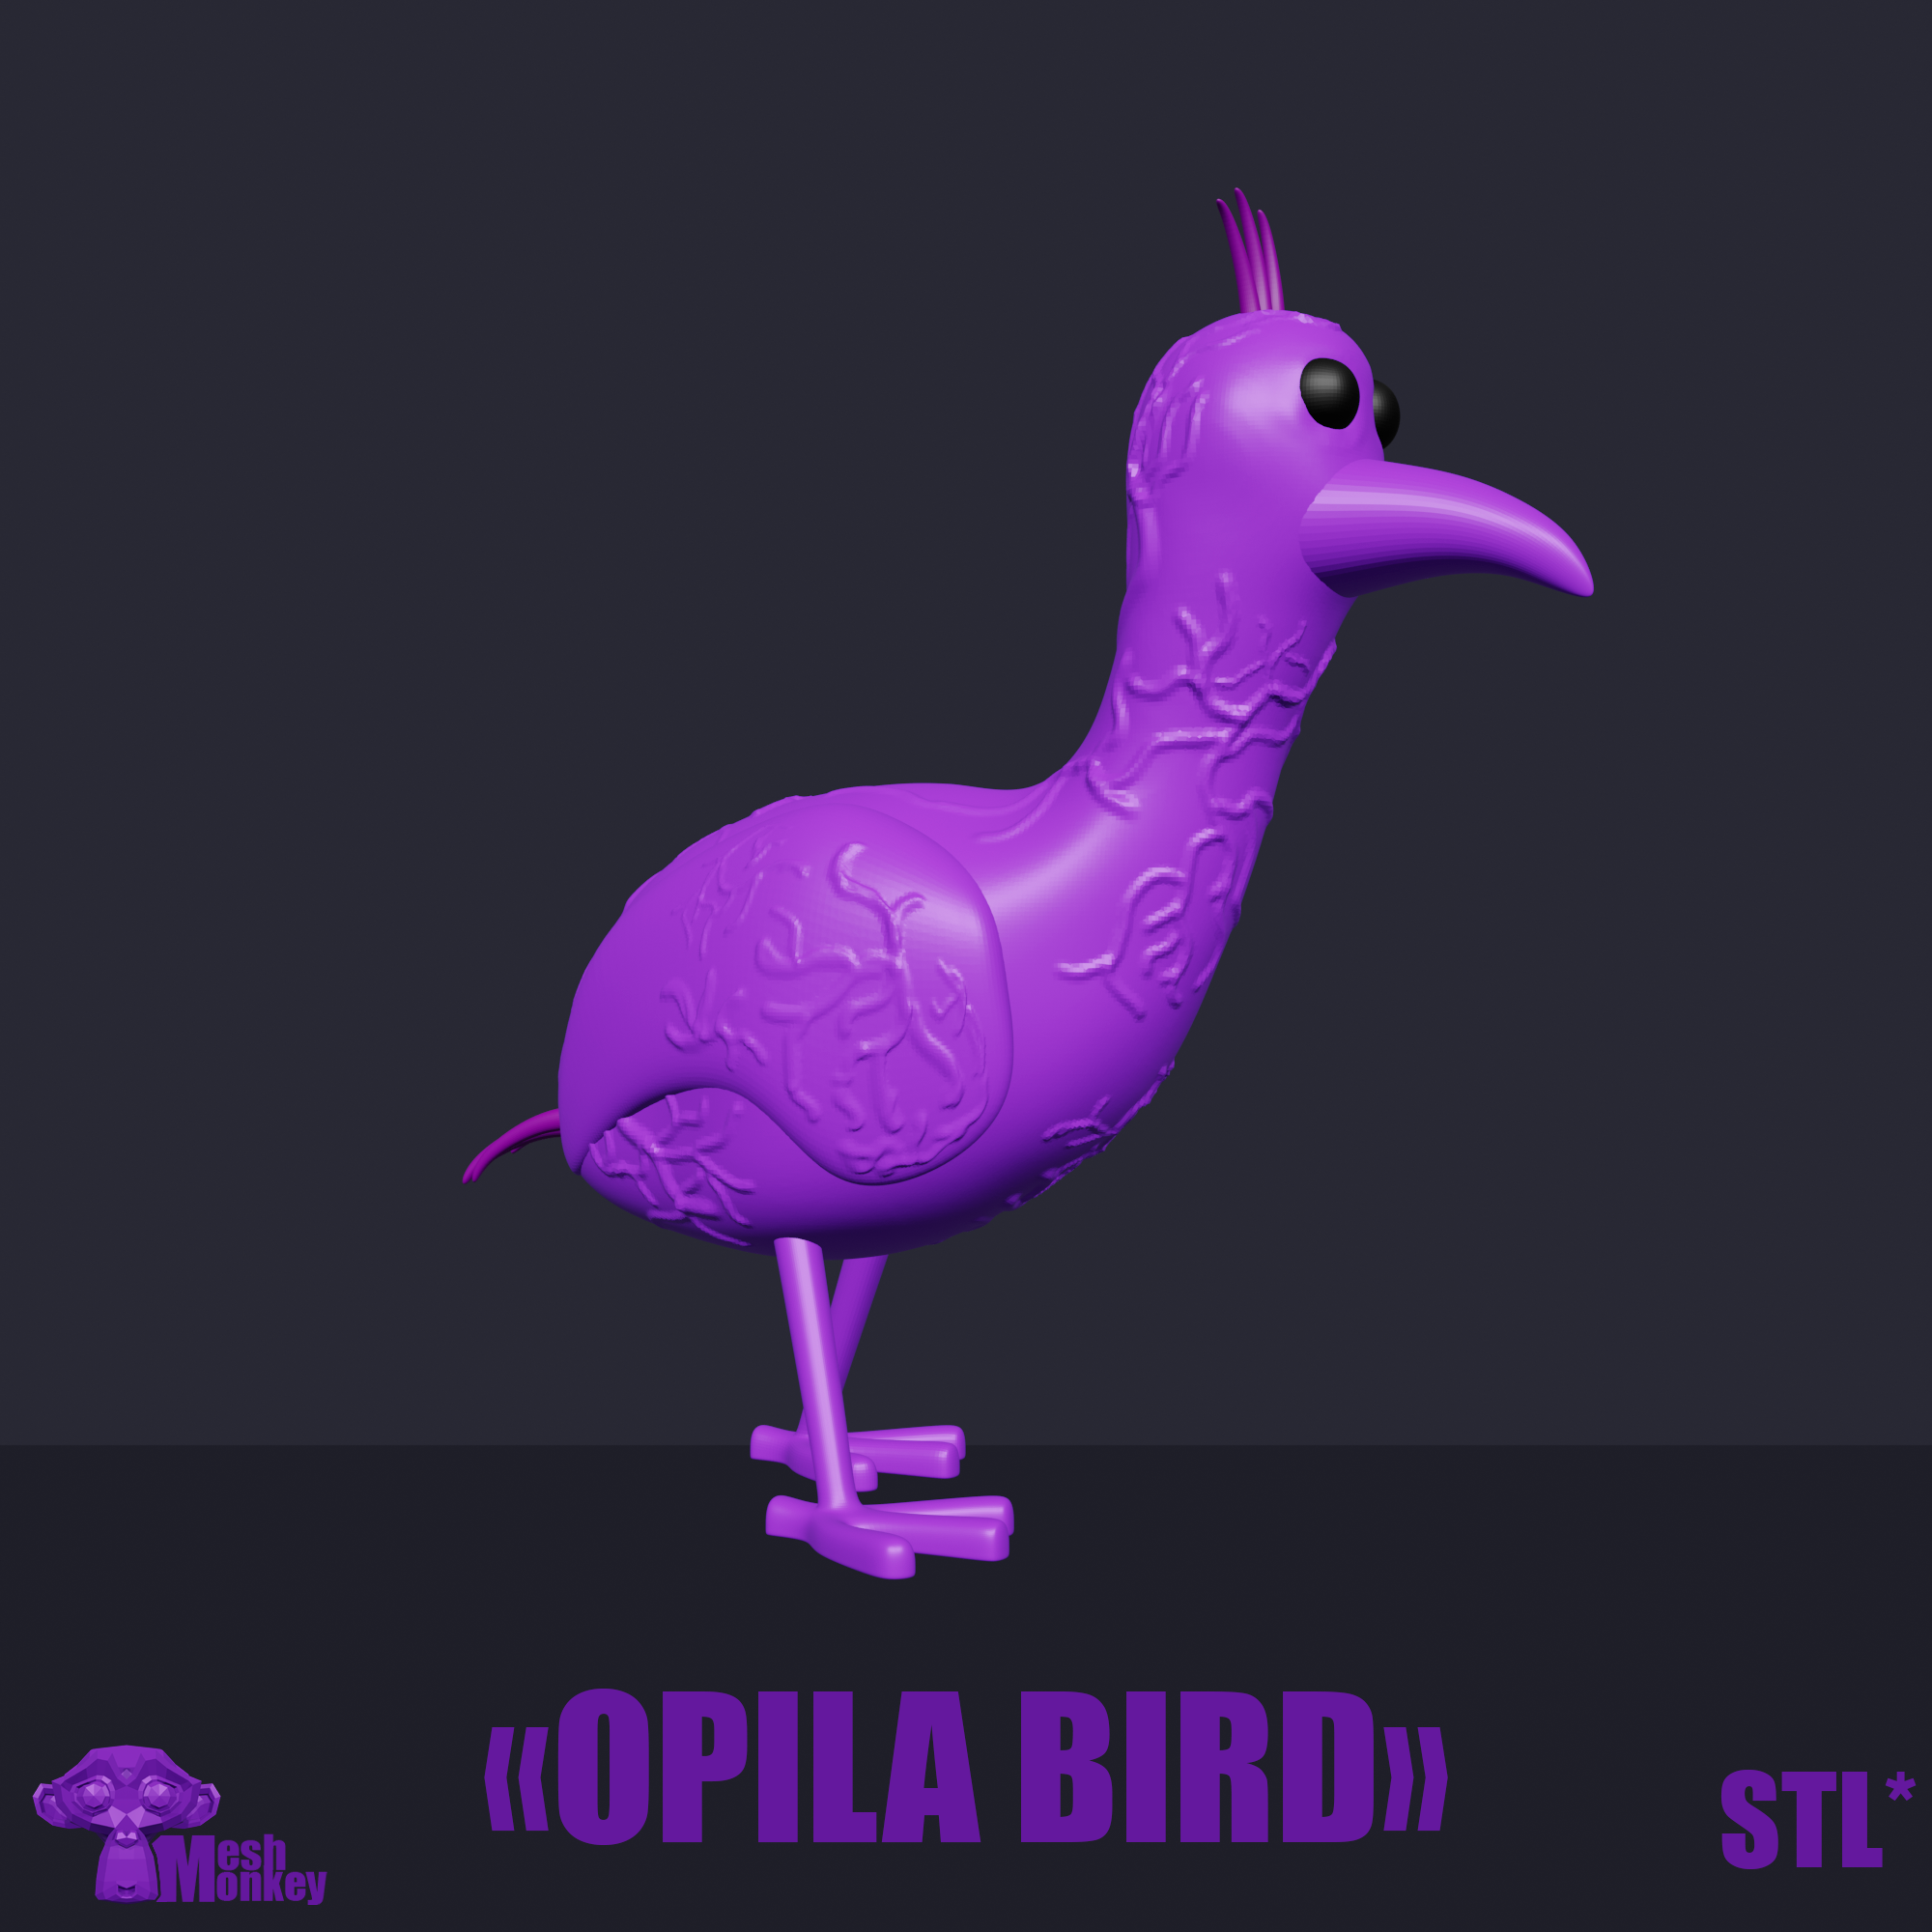 Opila Bird 3d model - Garten of Banban: Chapter 2